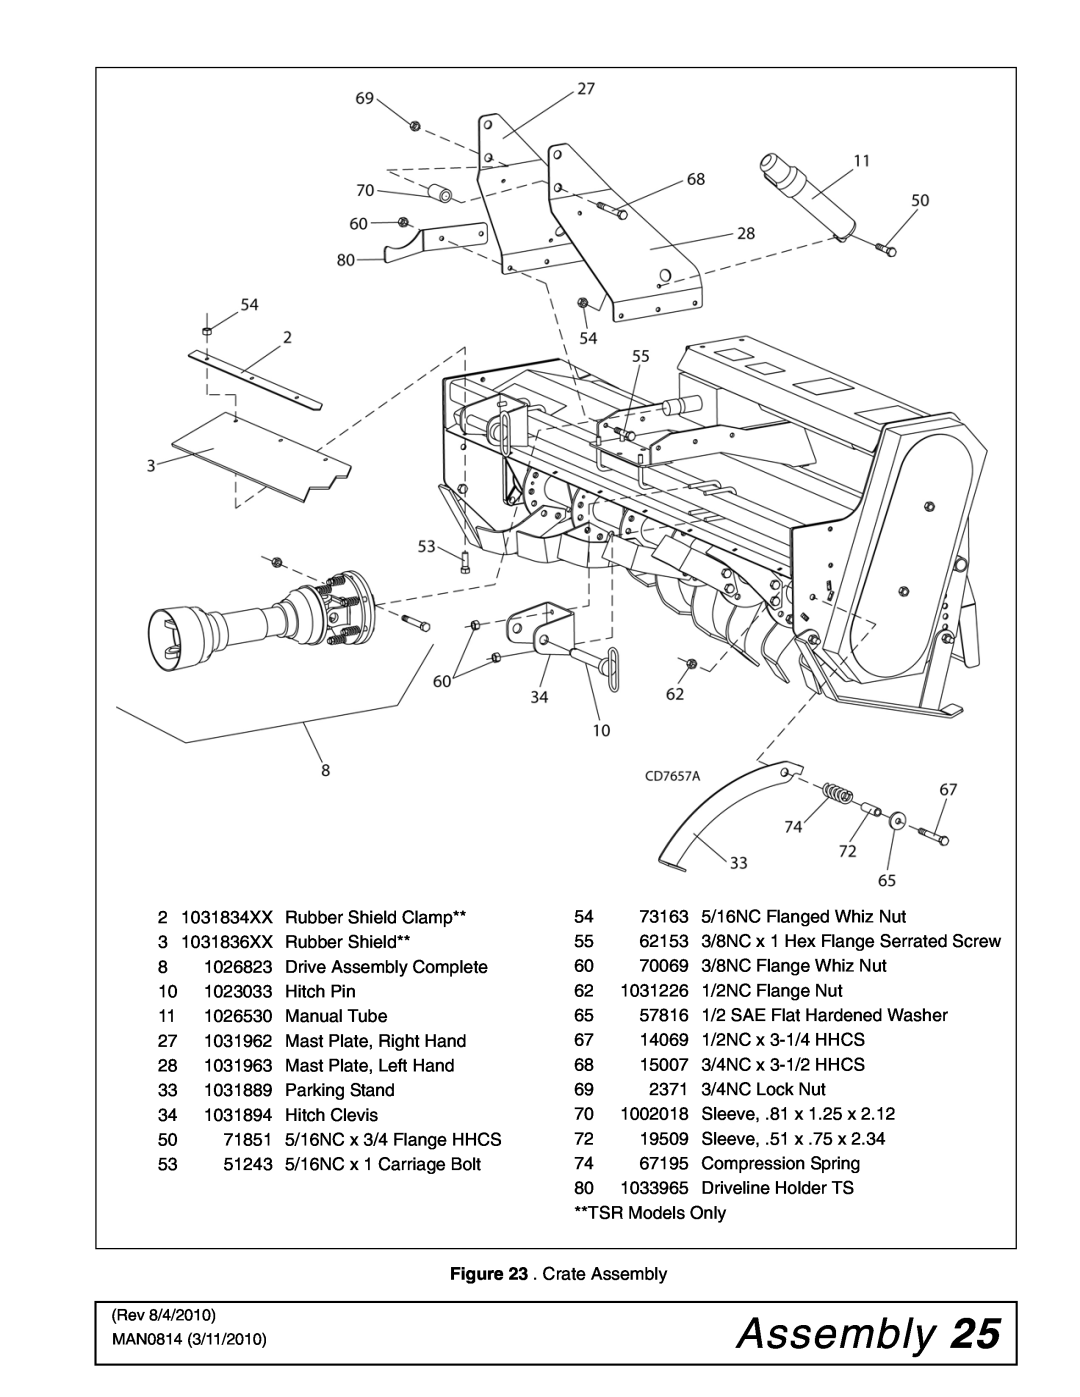 Woods Equipment TS44, TS52 manual Assembly 